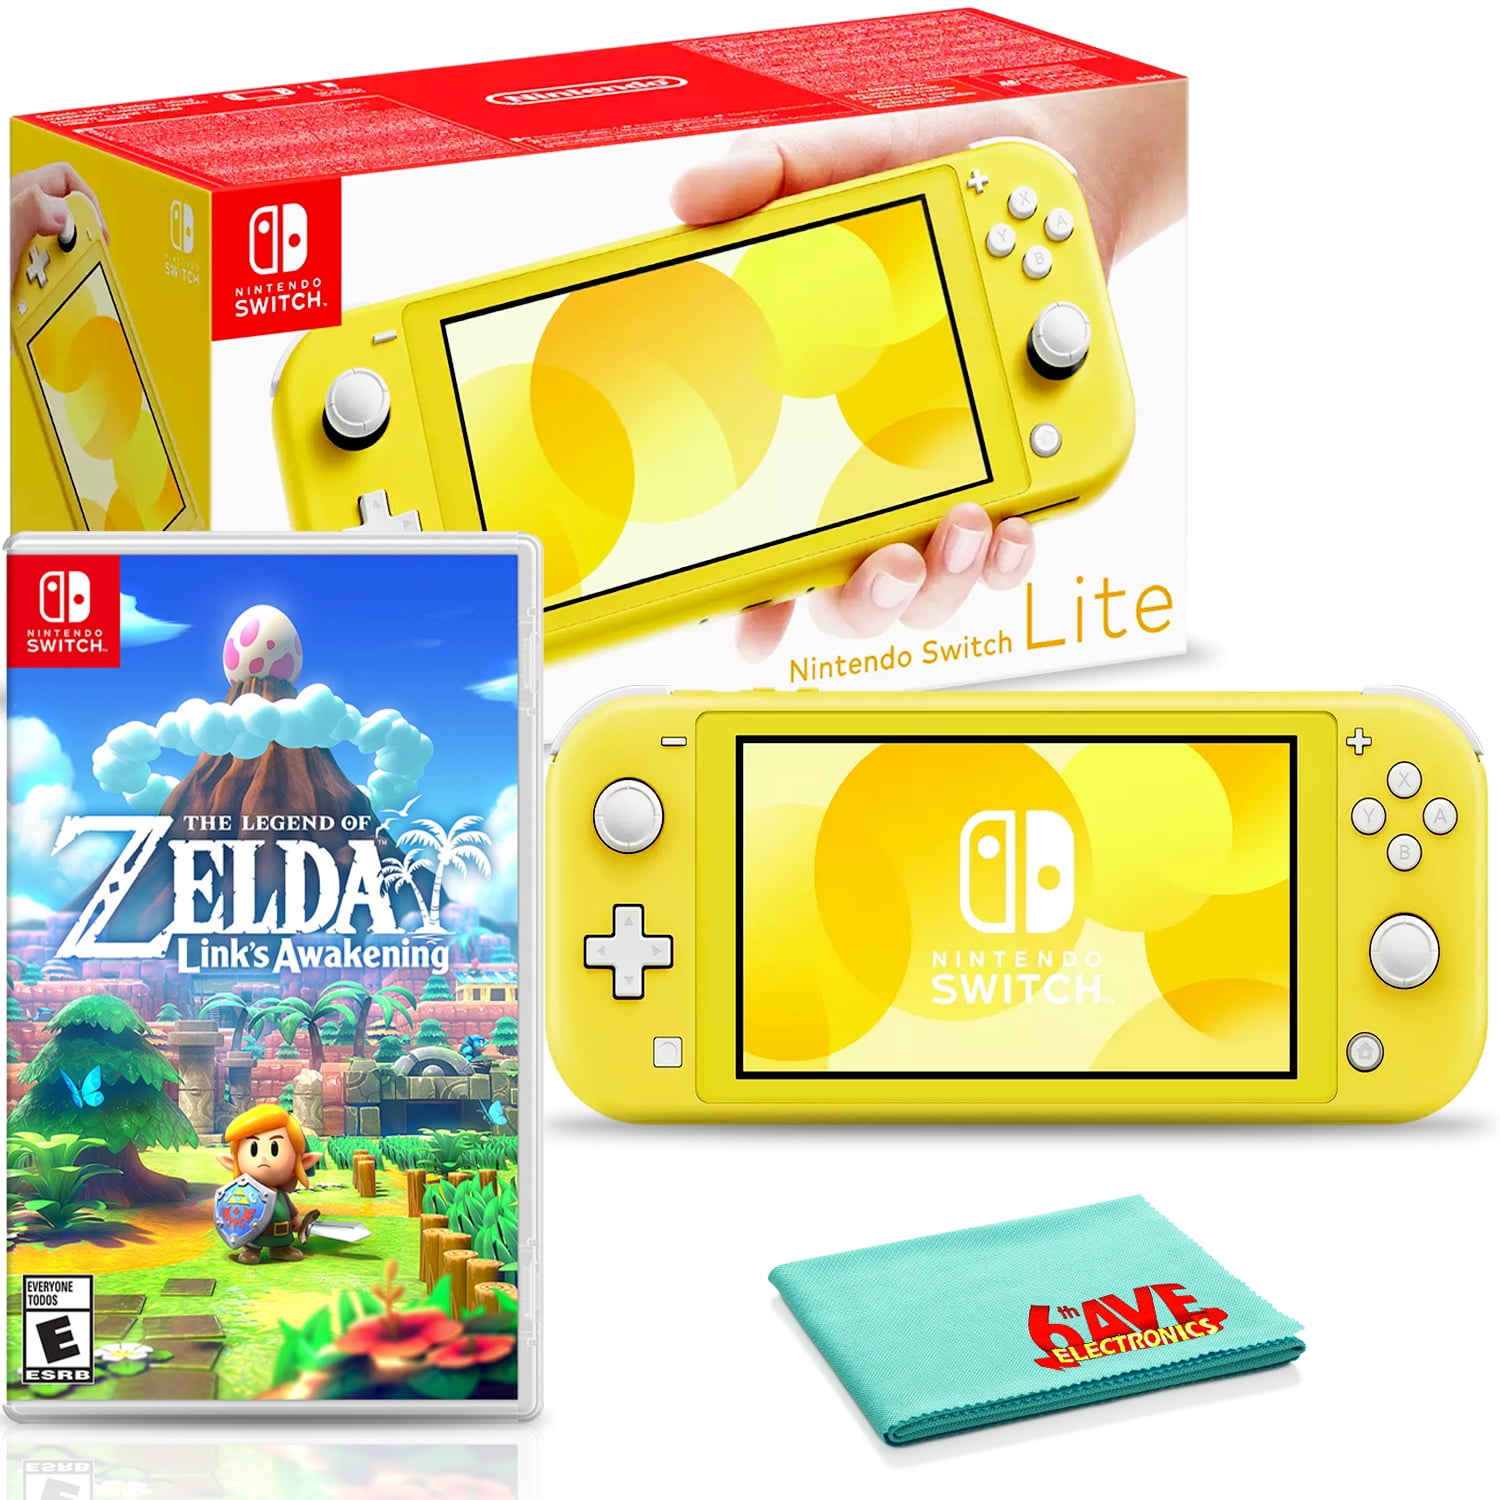 The Legend of Zelda: Link's Awakening Nintendo Switch Lite Gameplay 